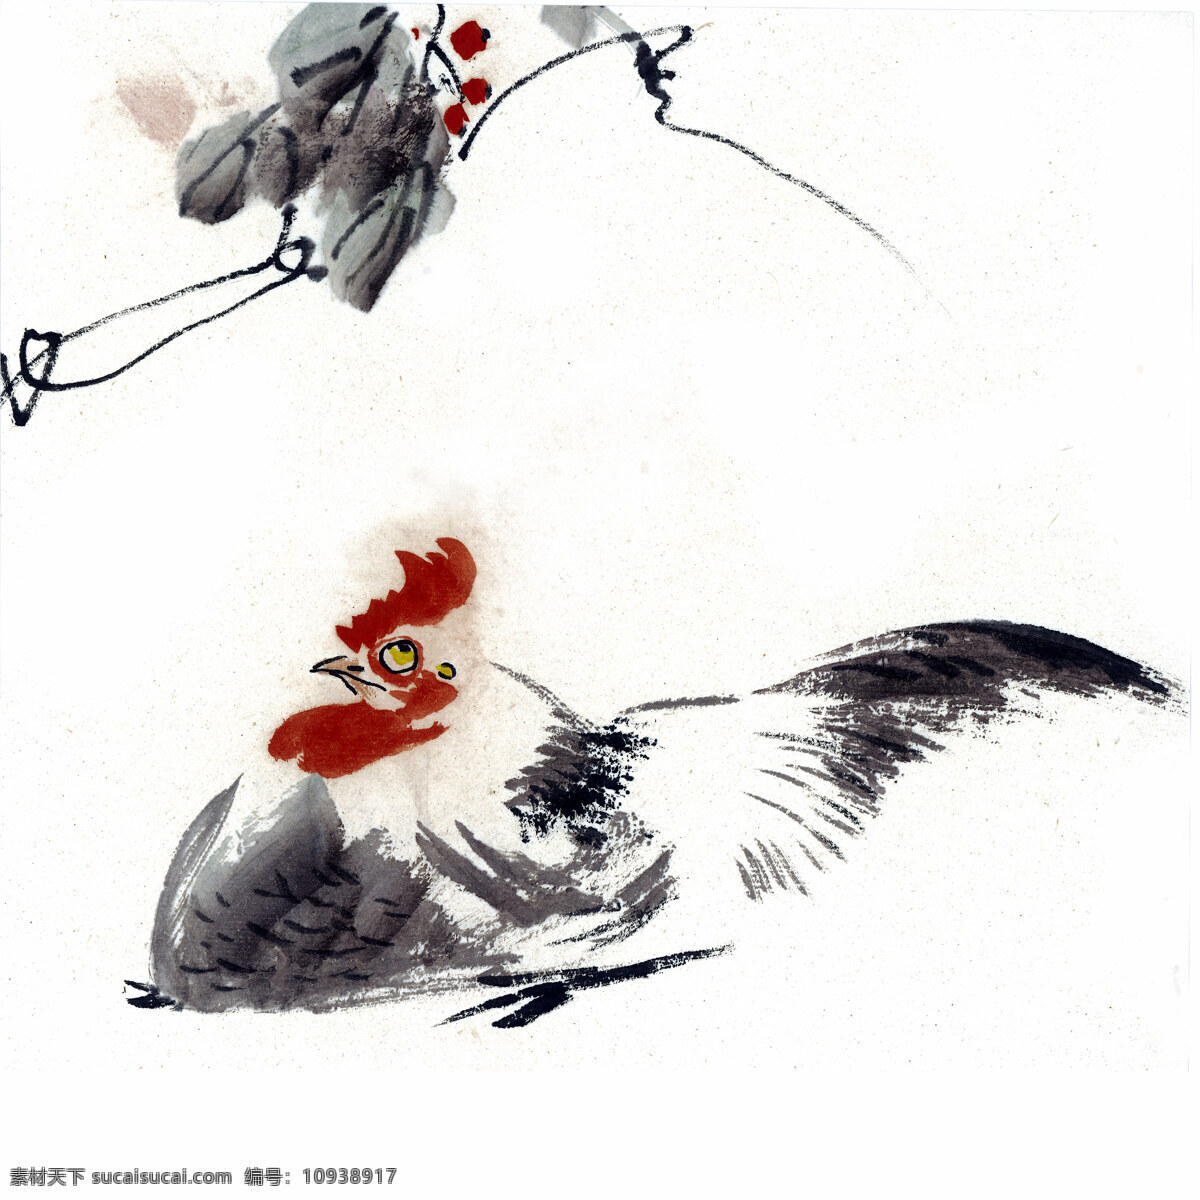 鸡 写意花鸟 国画0240 国画 设计素材 花鸟画篇 中国画篇 书画美术 白色